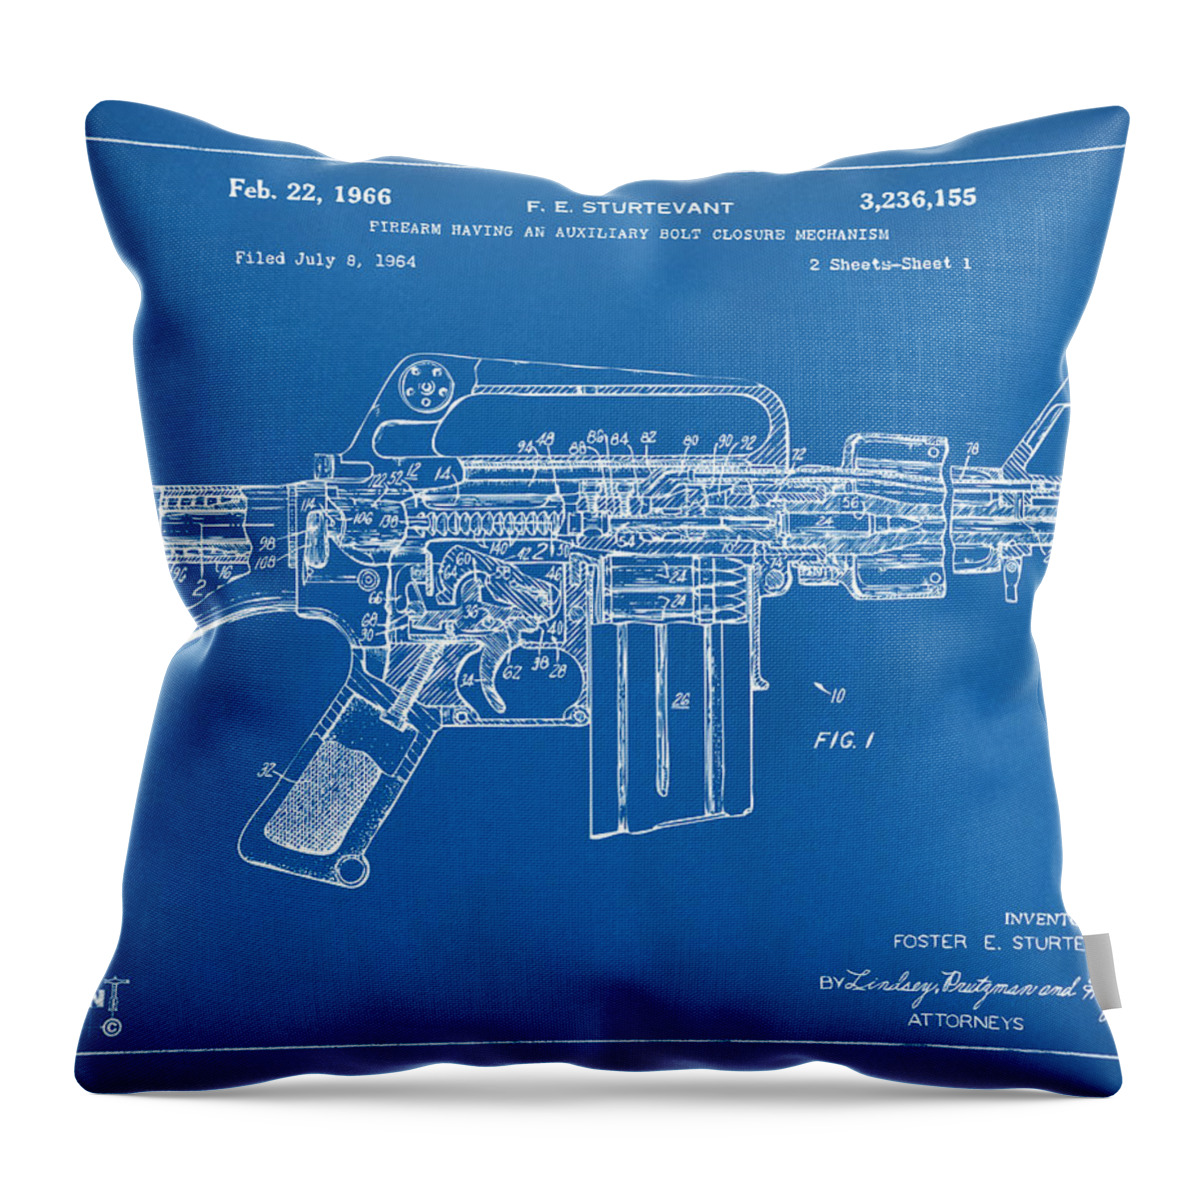 M-16 Throw Pillow featuring the digital art 1966 M-16 Gun Patent Blueprint by Nikki Marie Smith